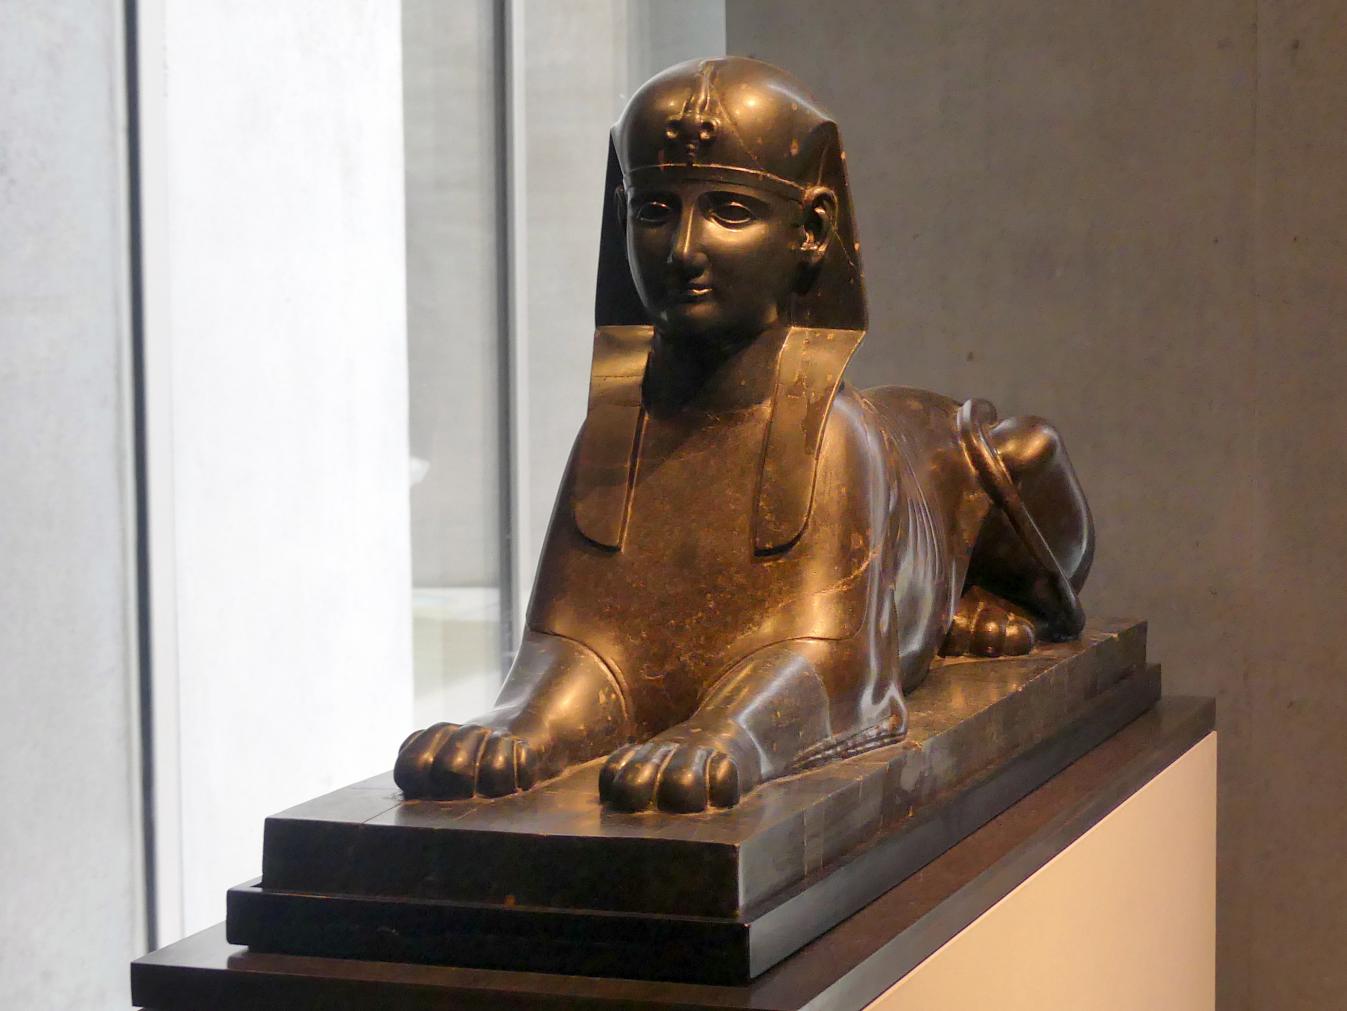 Sphinxfigur, Römische Kaiserzeit, 27 v. Chr. - 54 n. Chr., 1 - 100, Bild 3/6